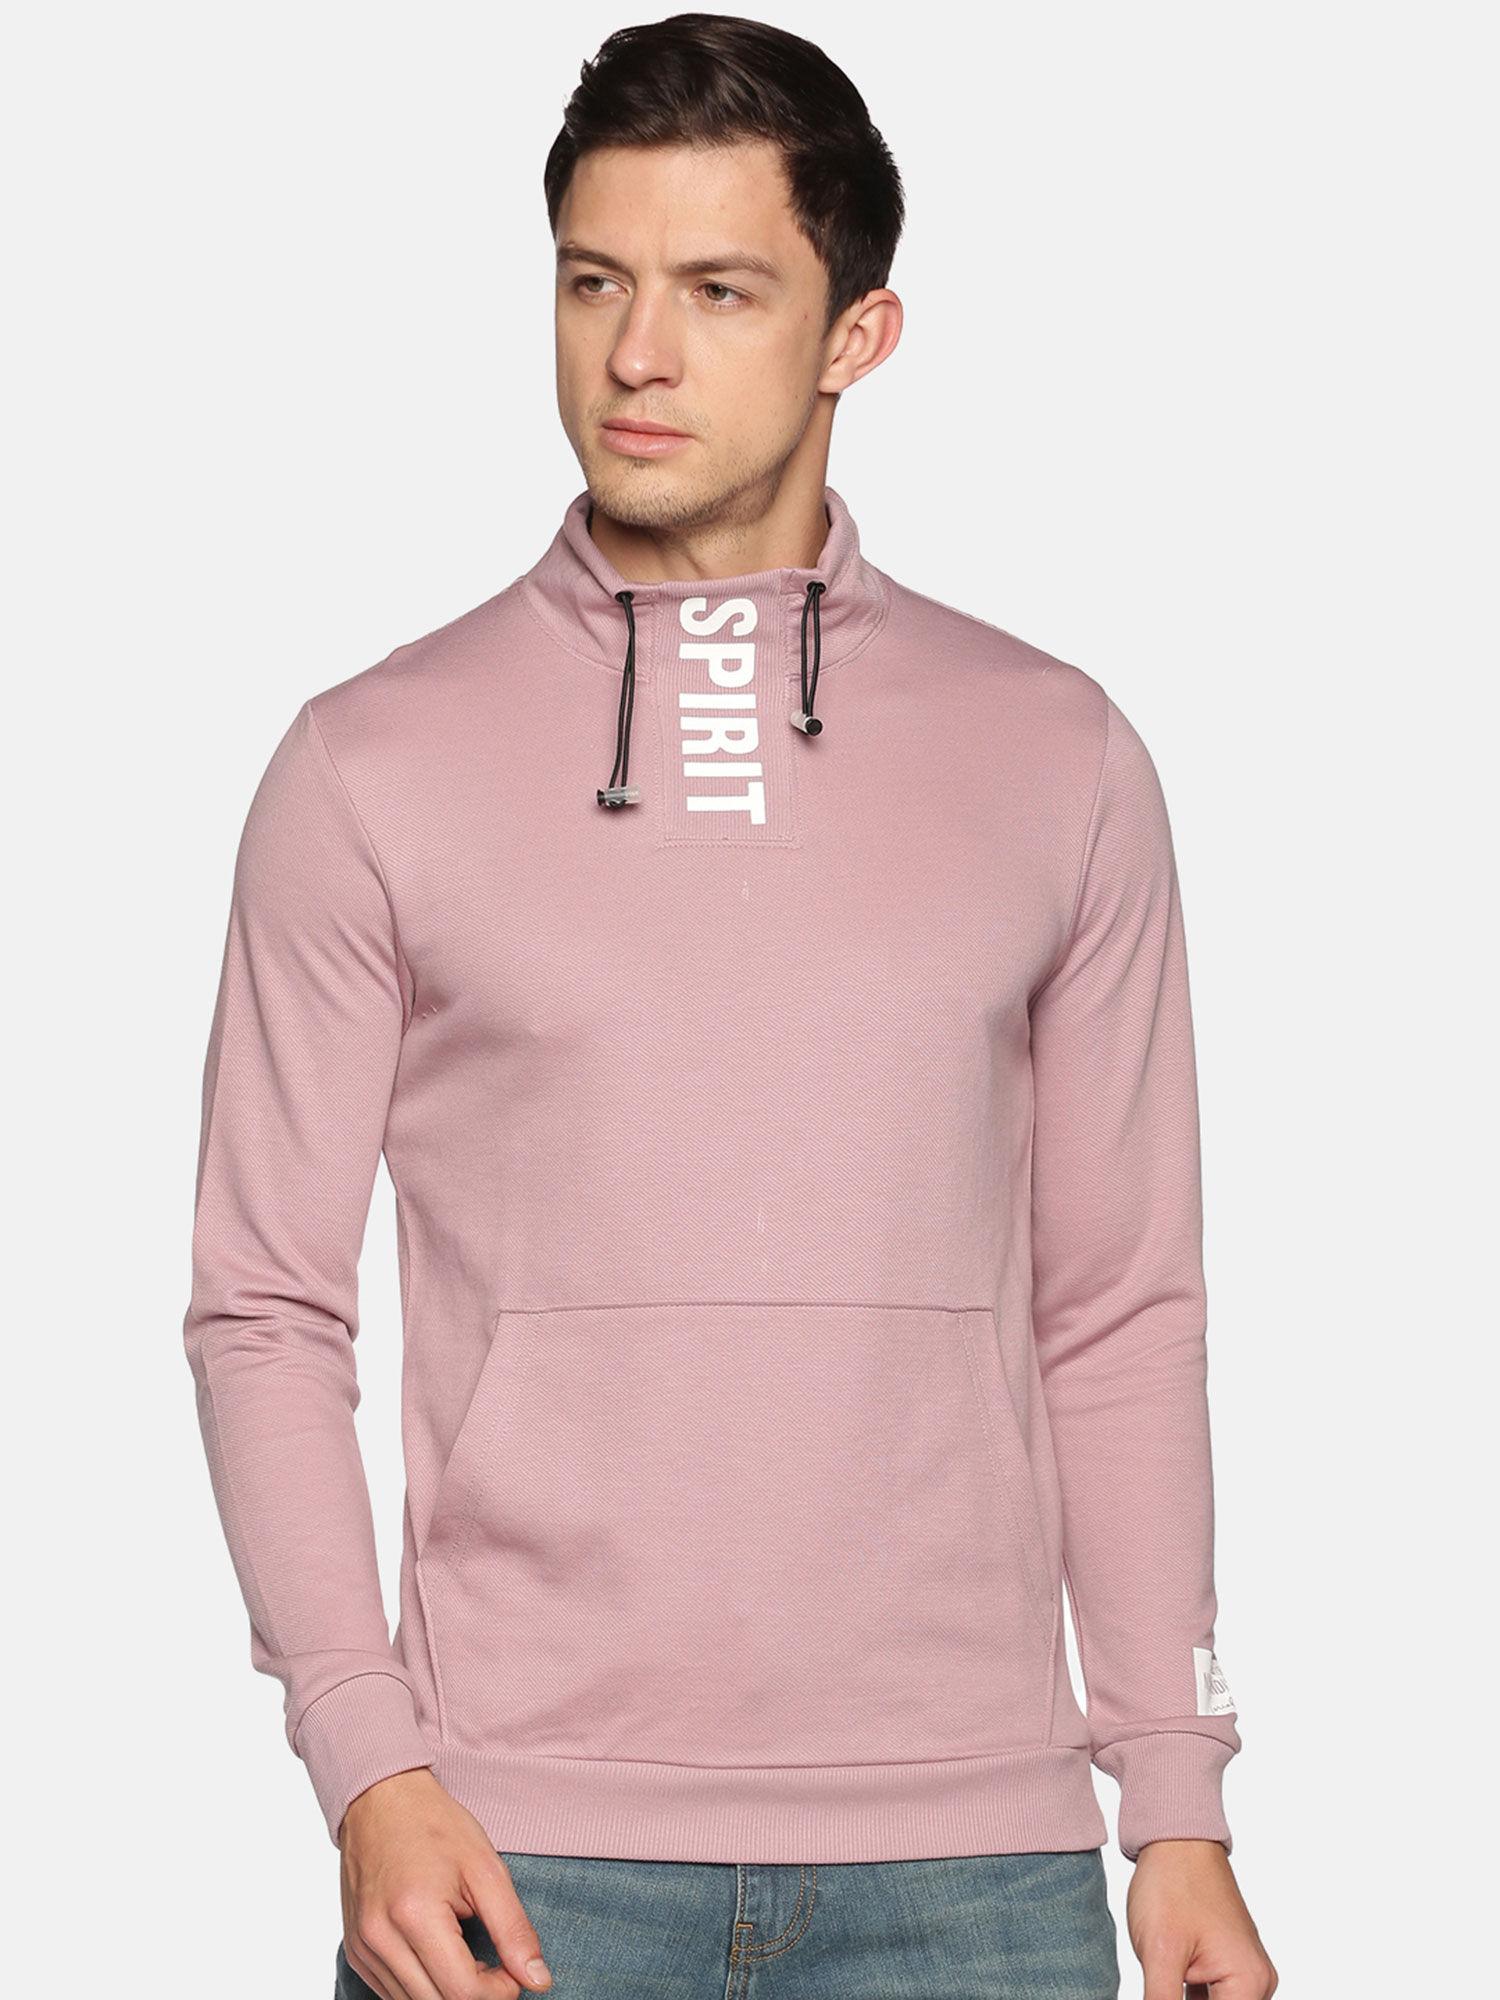 Men's Cotton Casual Pink Sweatshirt